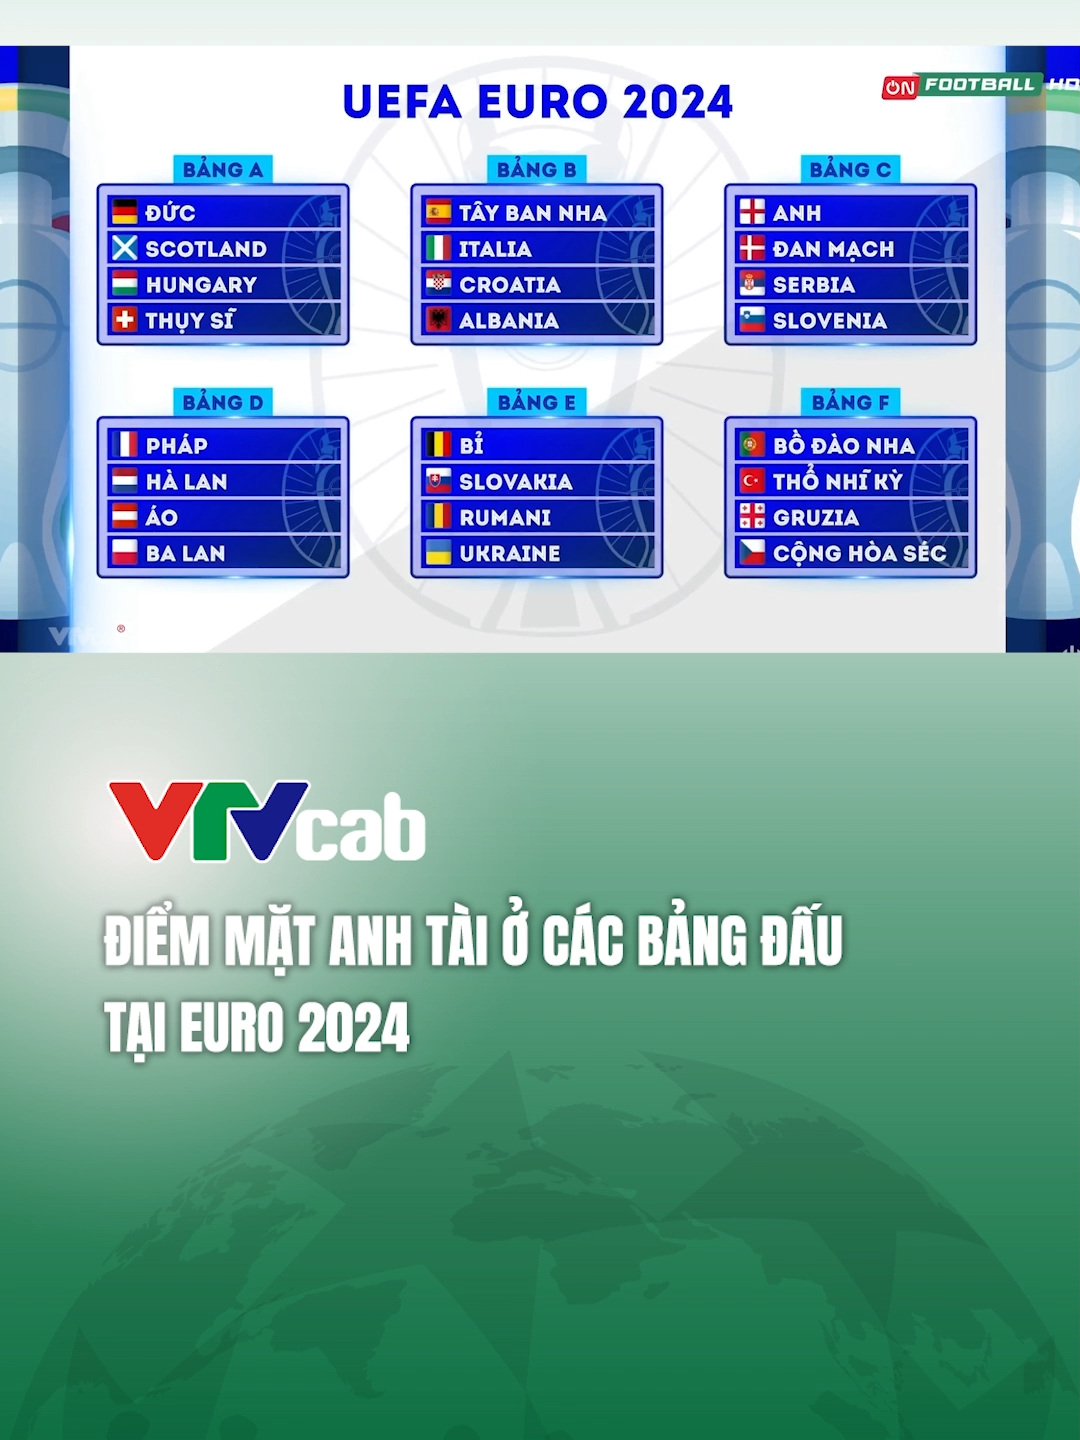 Điểm mặt các đội bóng tại các bảng đấu ở Euro 2024 #vtvcab #EURO2024 #sportsontiktkok